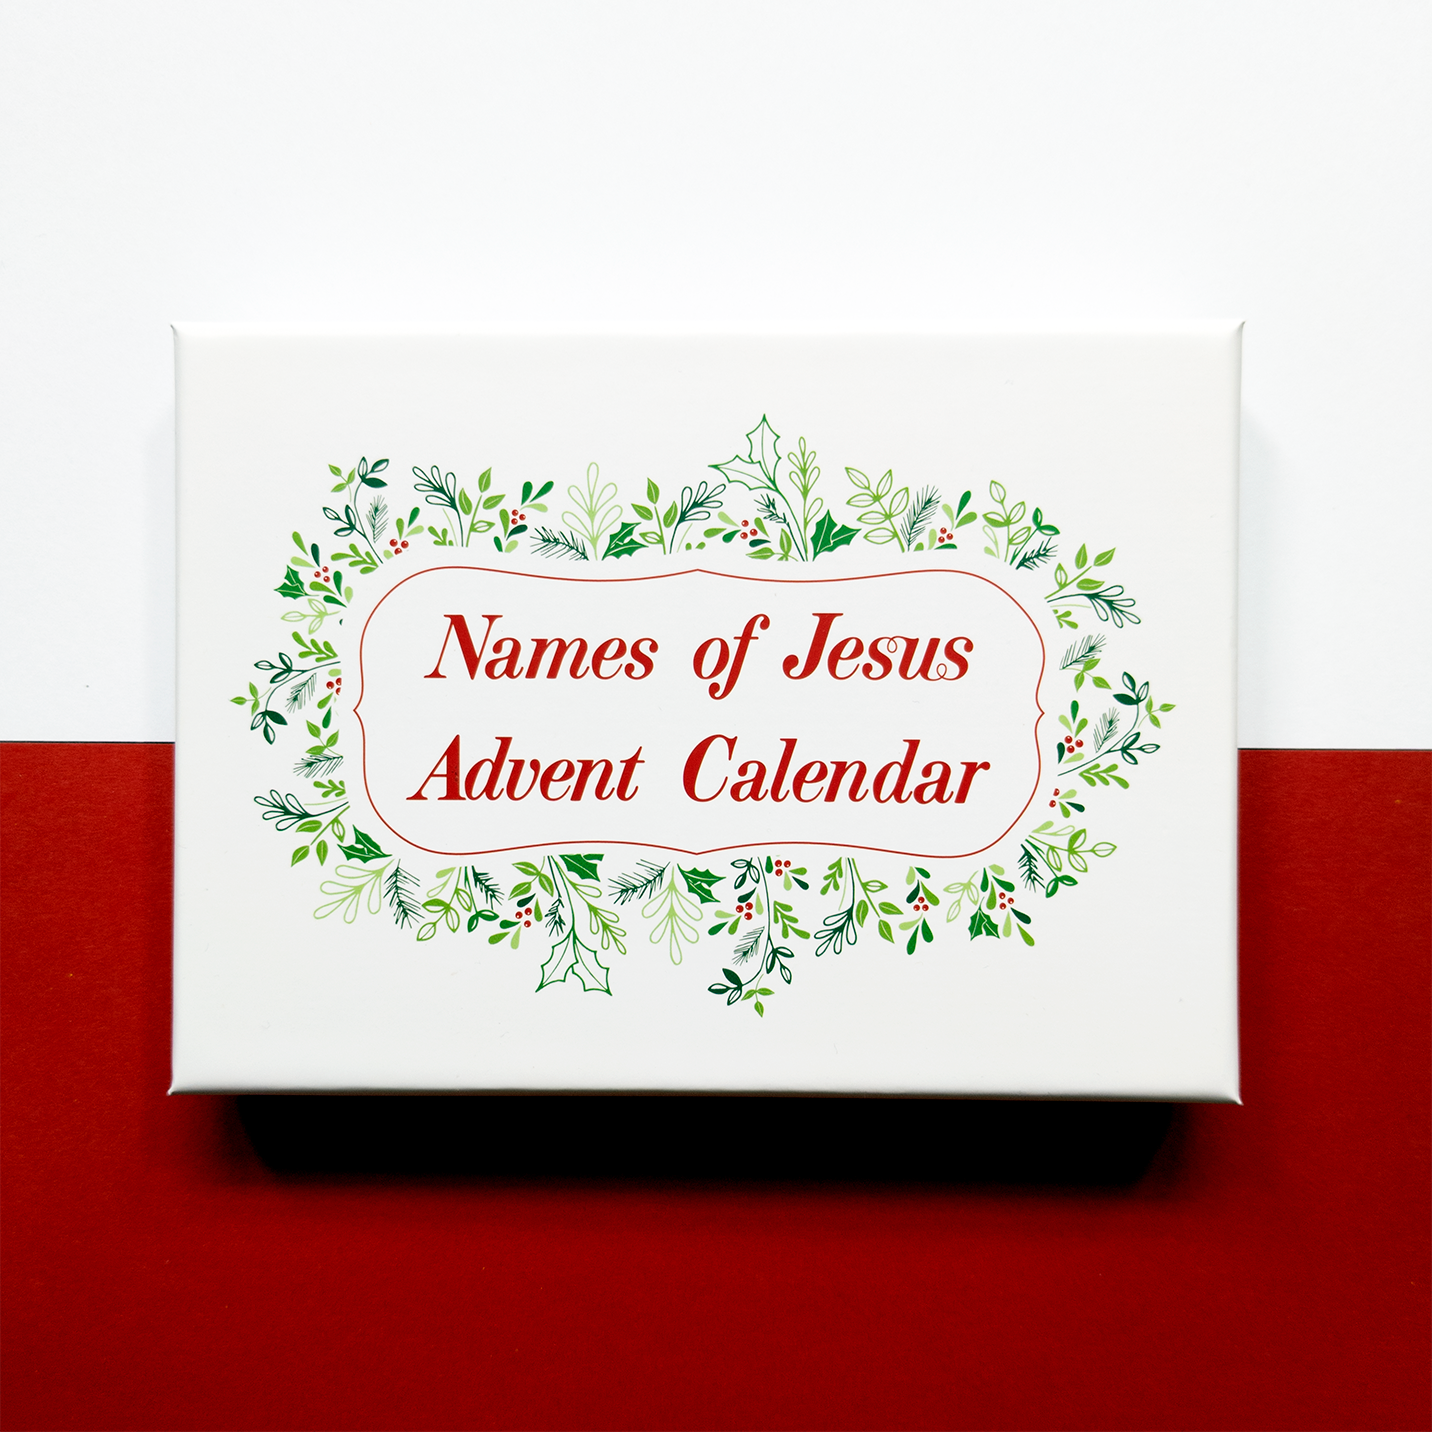 Names of Jesus Advent Calendar